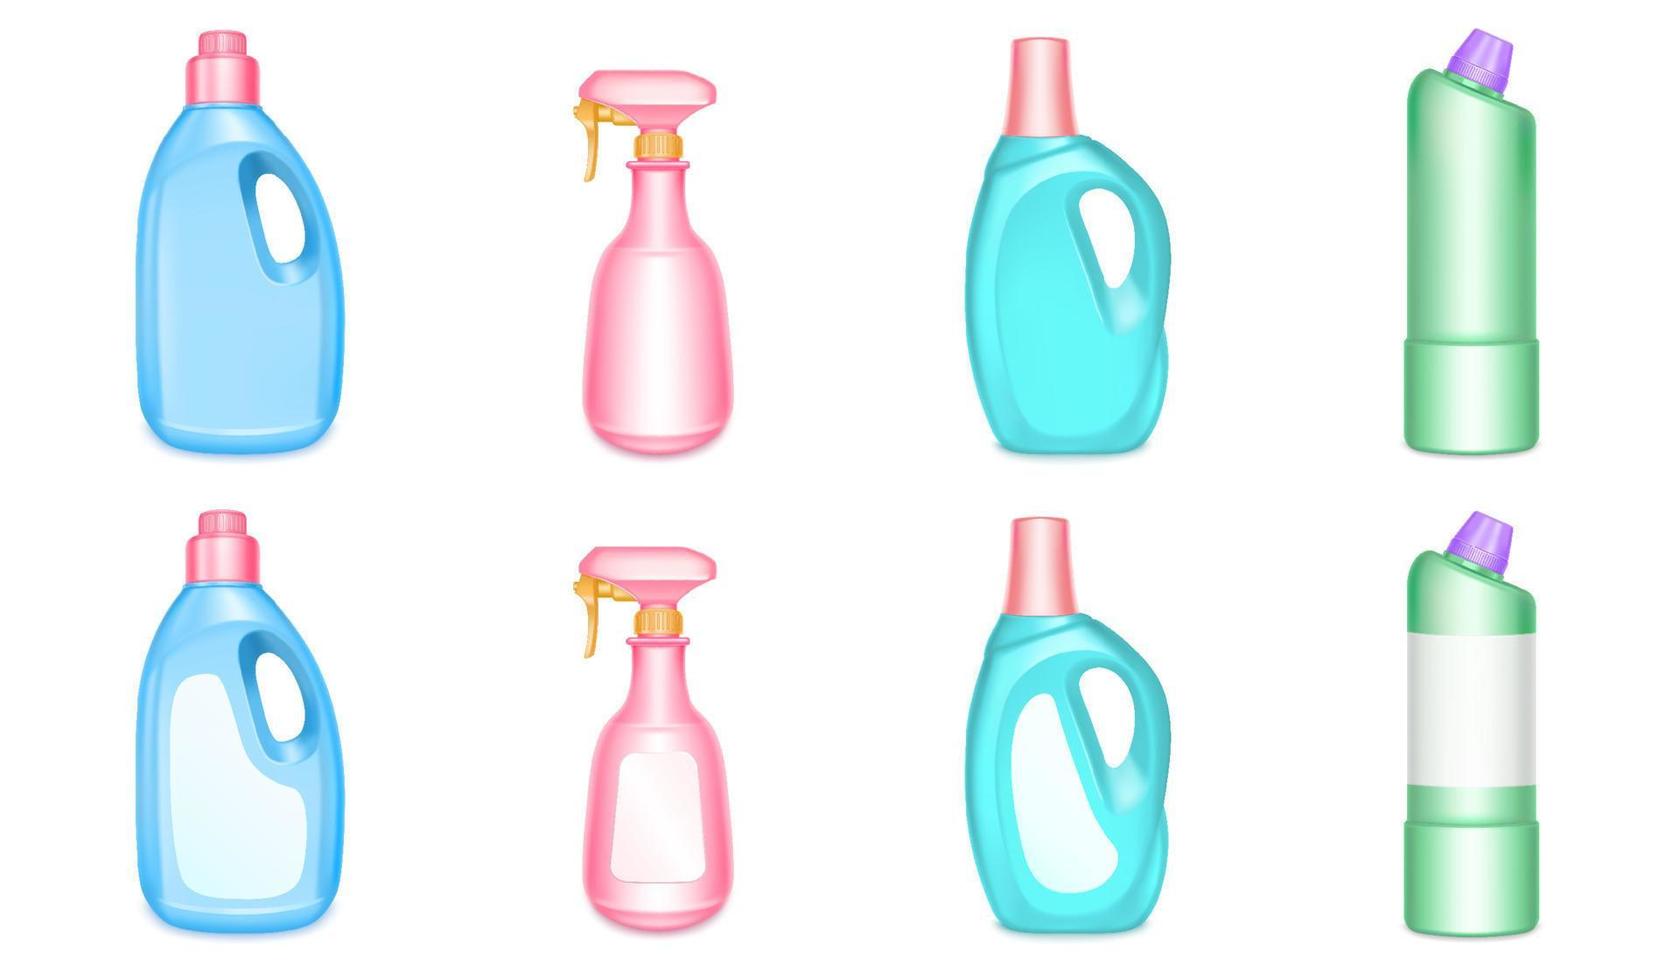 garrafas plásticas para produtos químicos domésticos, produtos de limpeza vetor